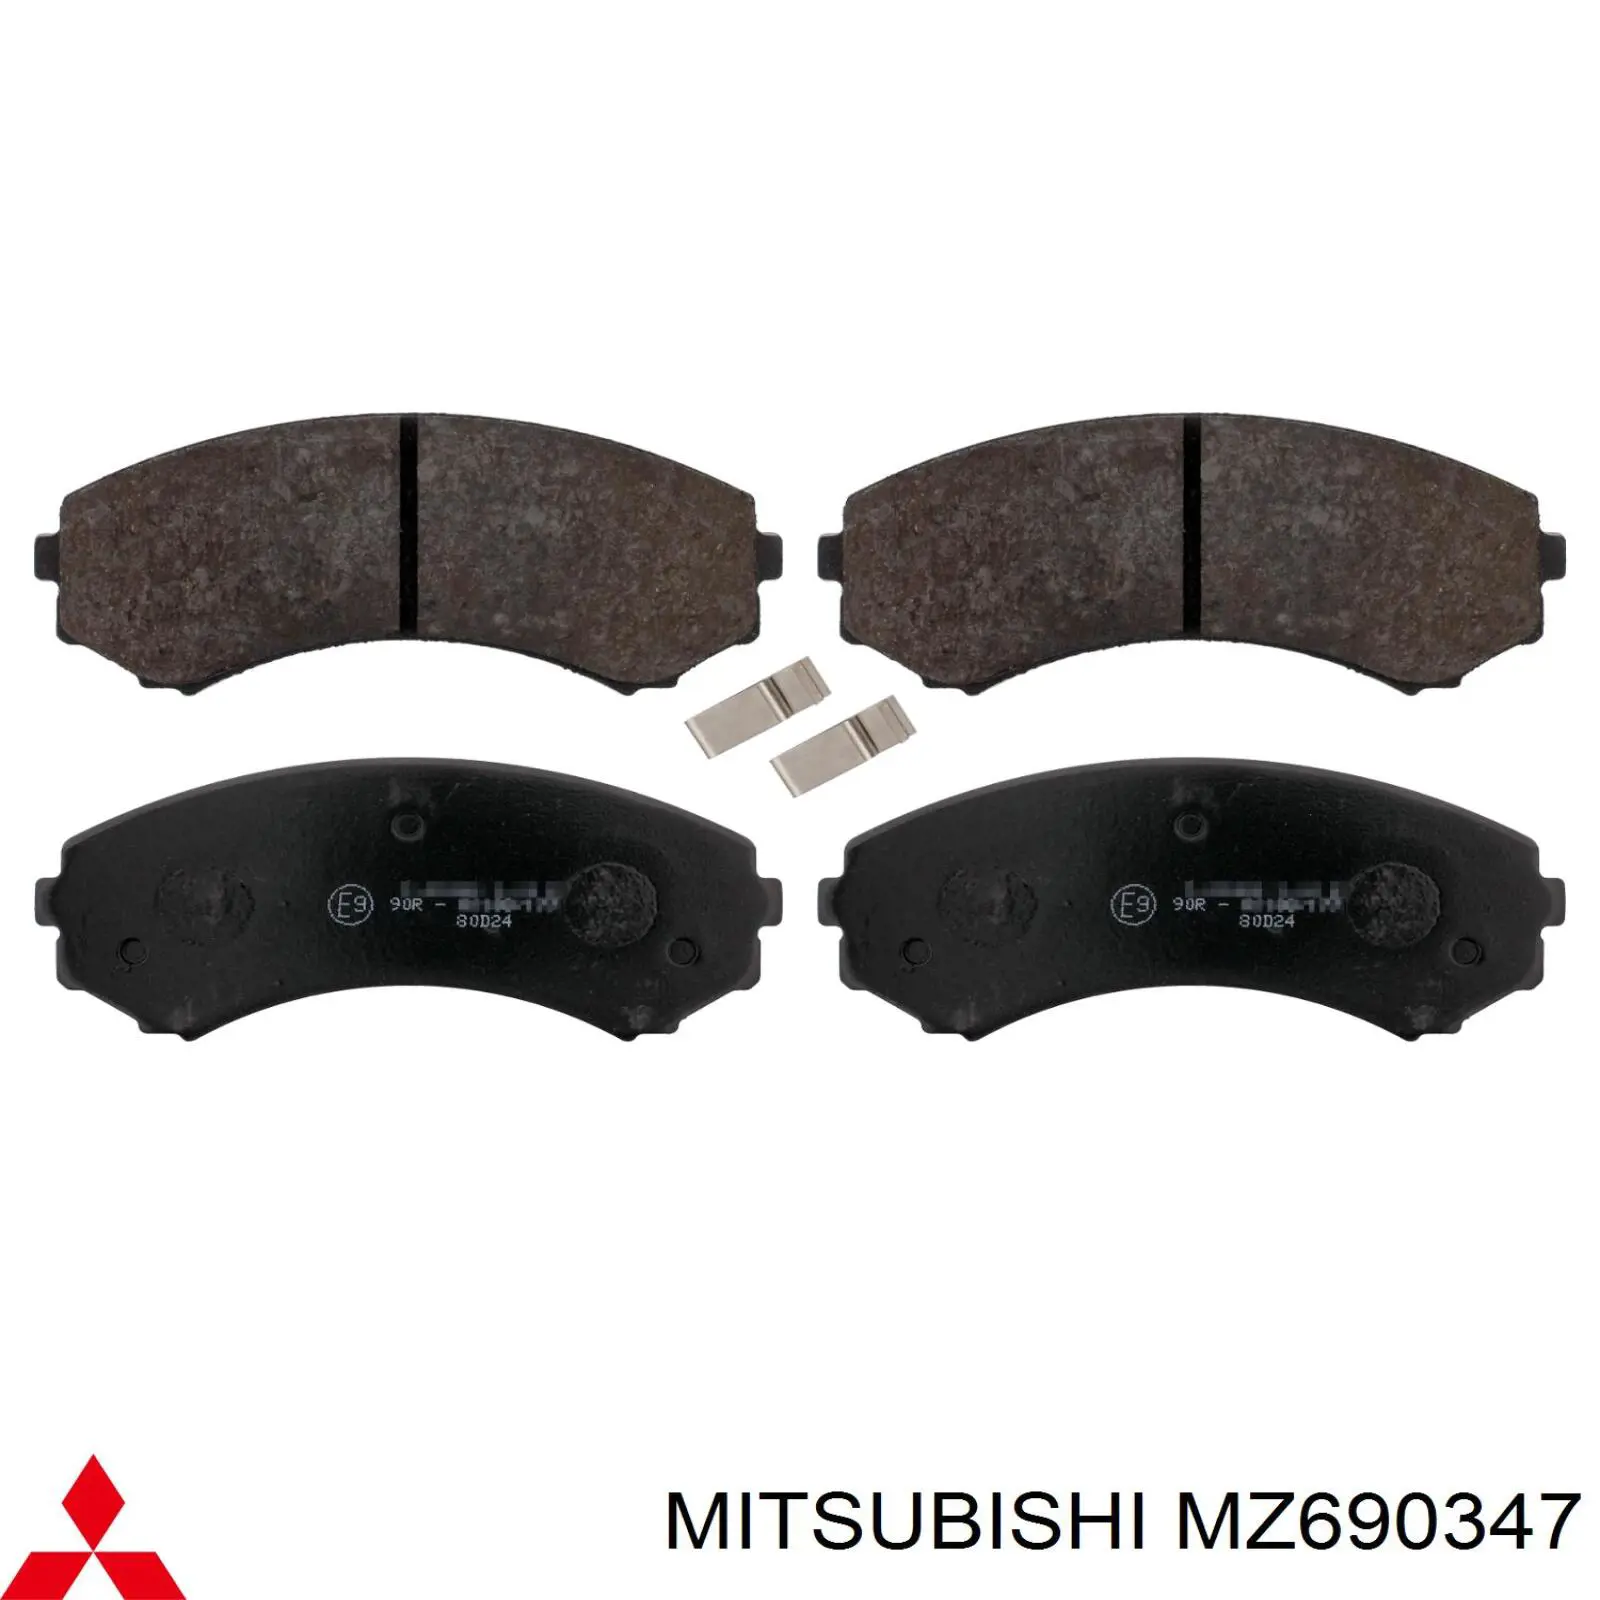 MZ690347 Mitsubishi колодки тормозные передние дисковые